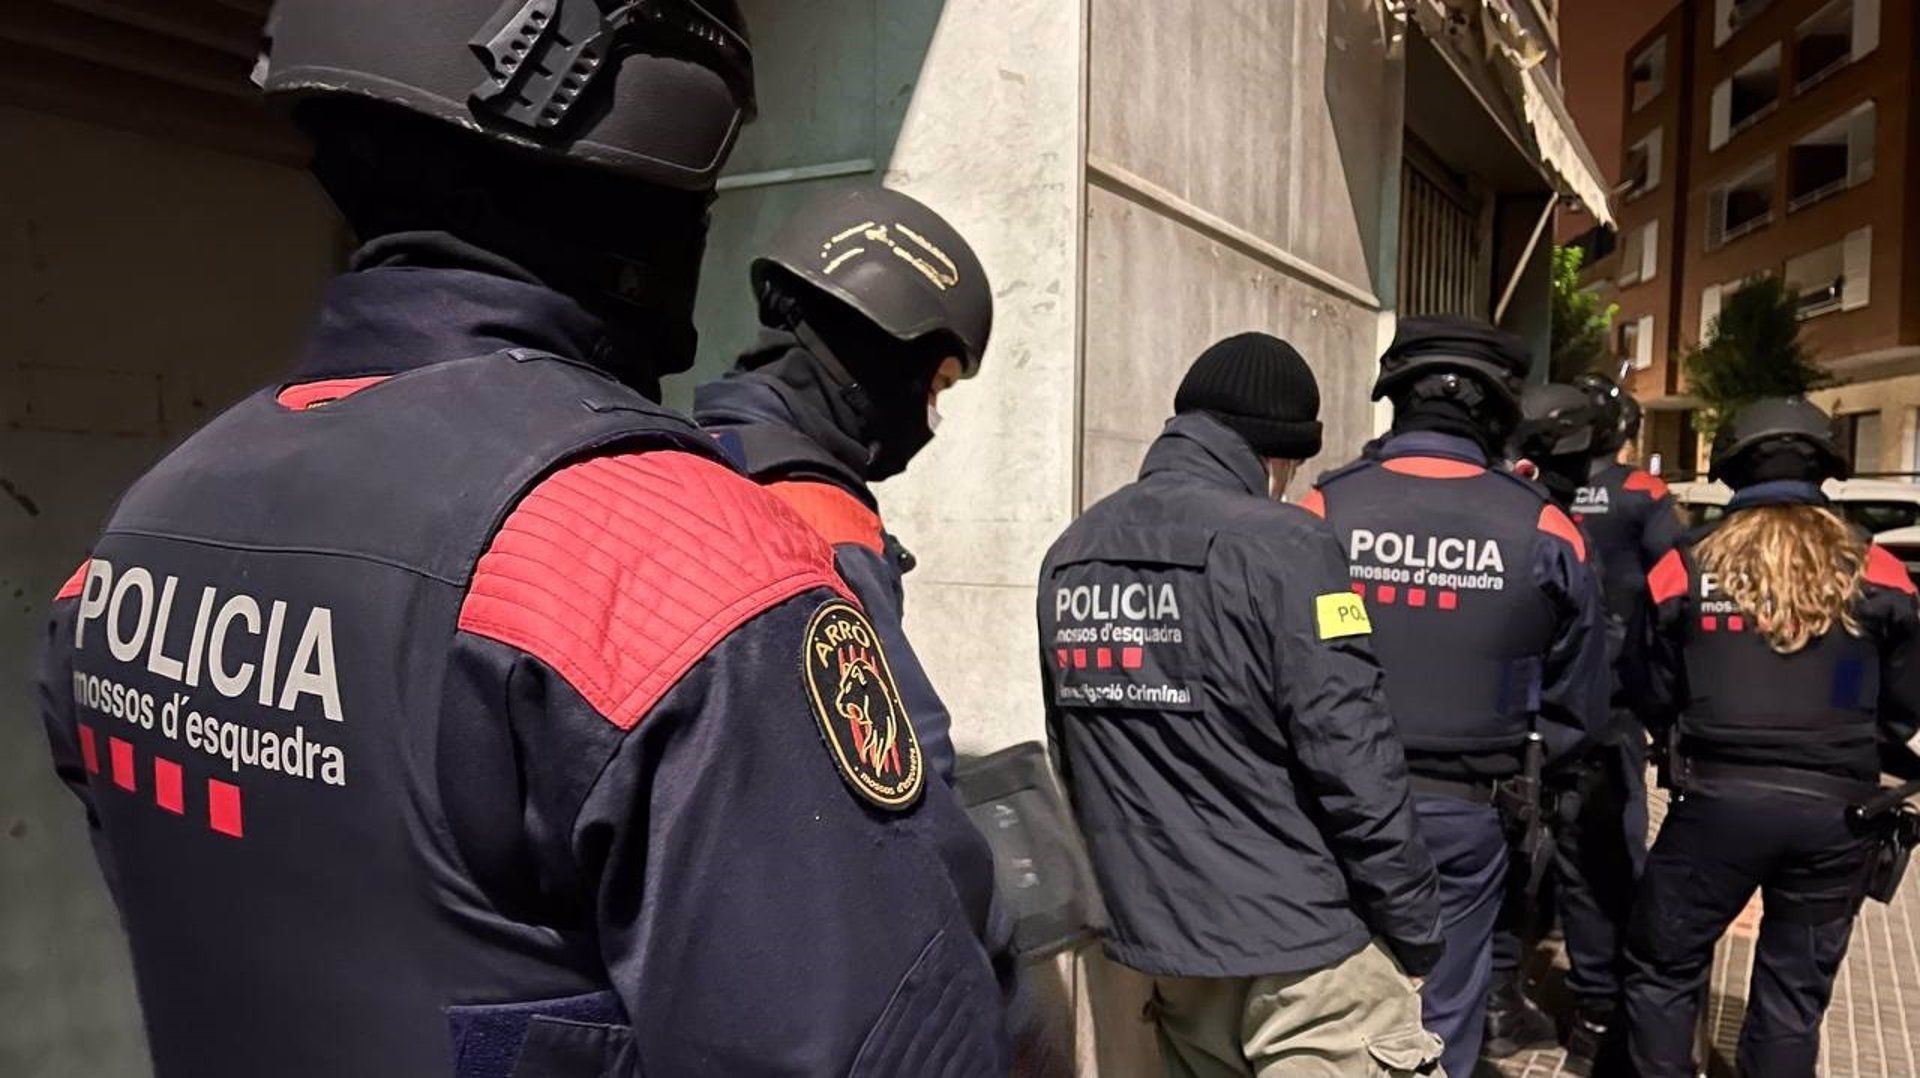 Agentes de los Mossos d'Esquadra en Barcelona / MOSSOS D'ESQUADRA